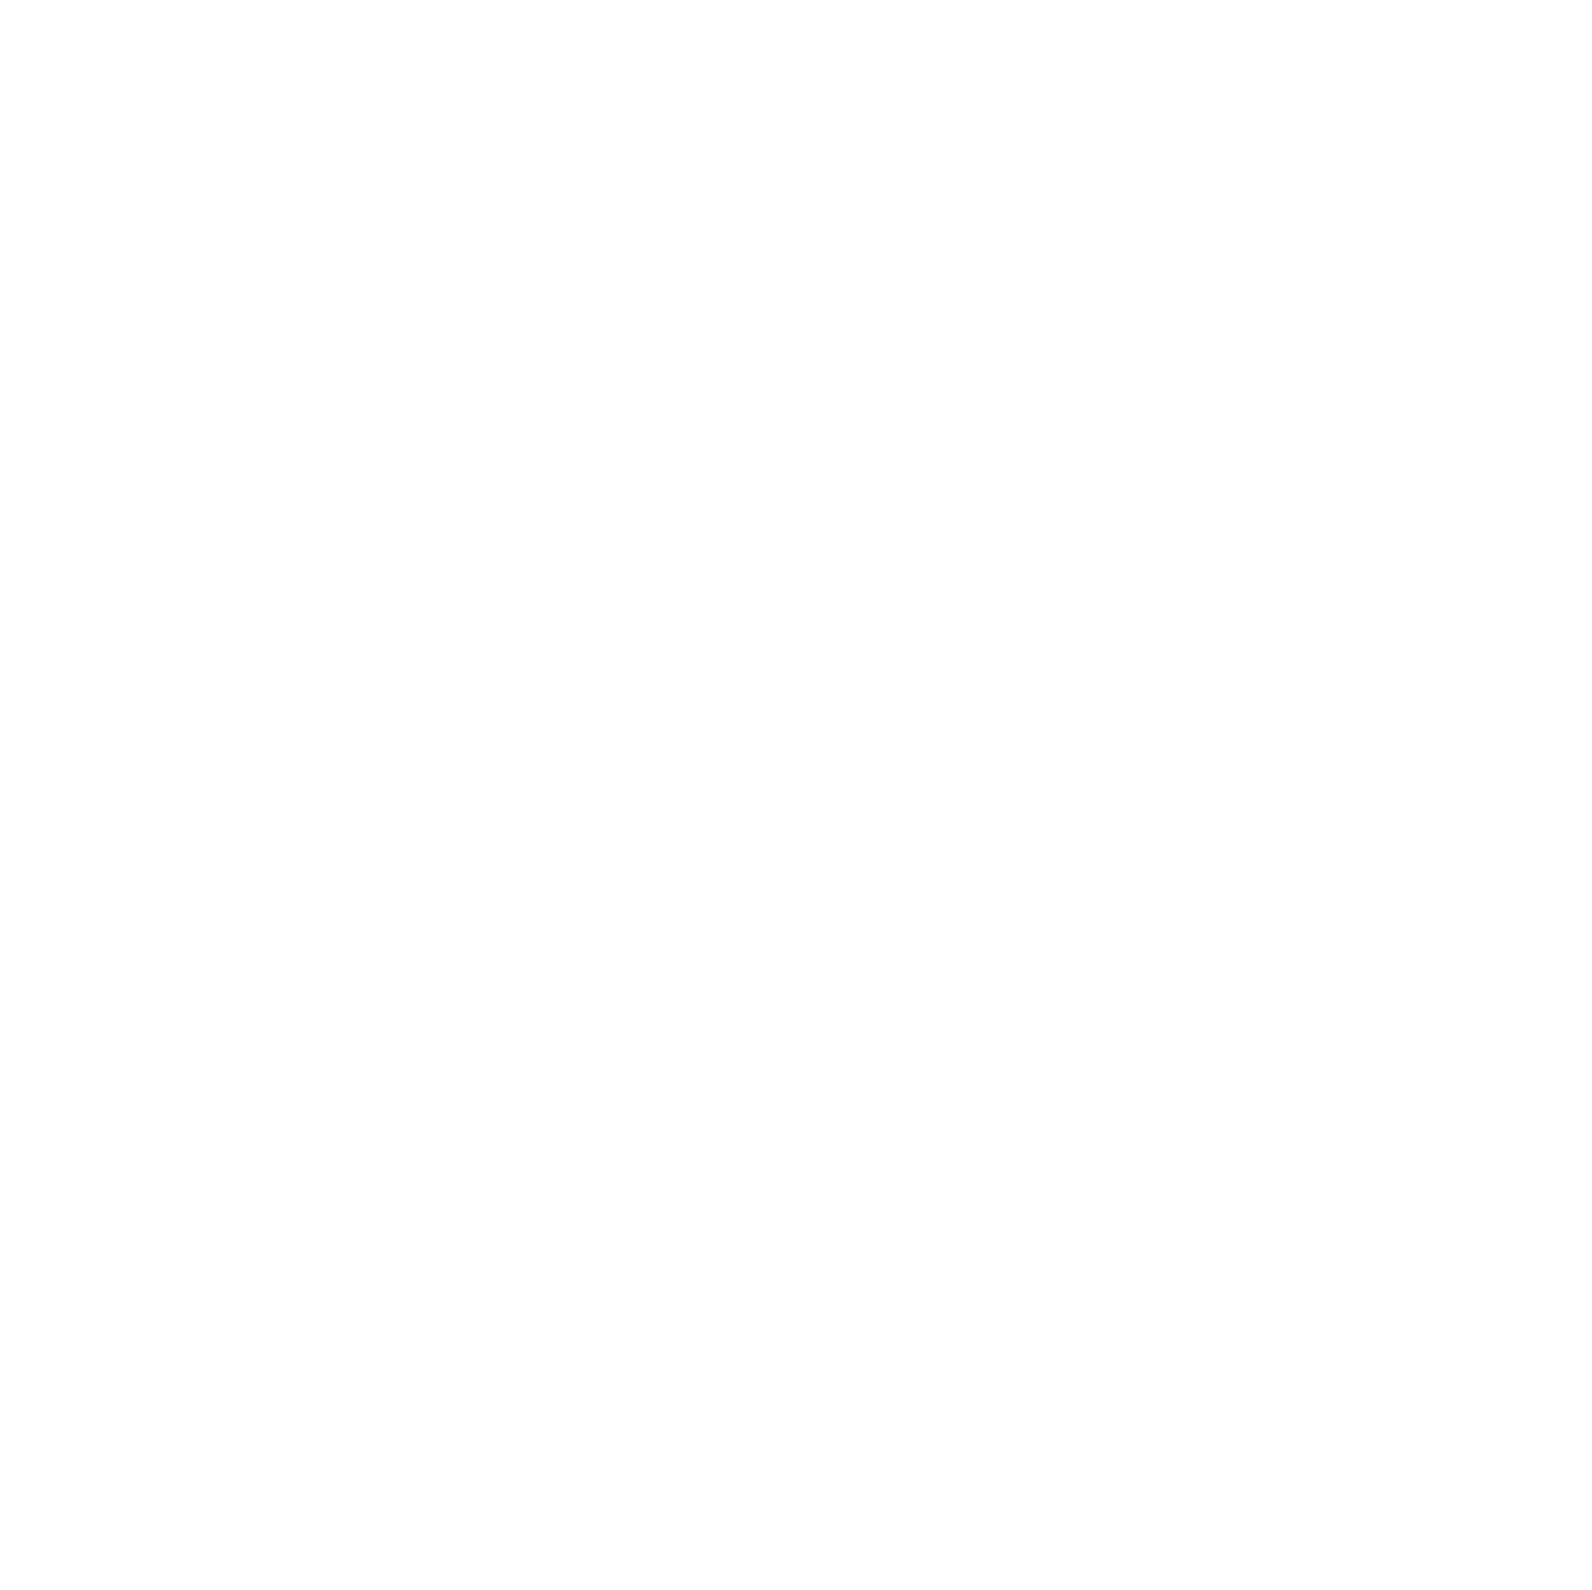 VF Corporation logo pour fonds sombres (PNG transparent)